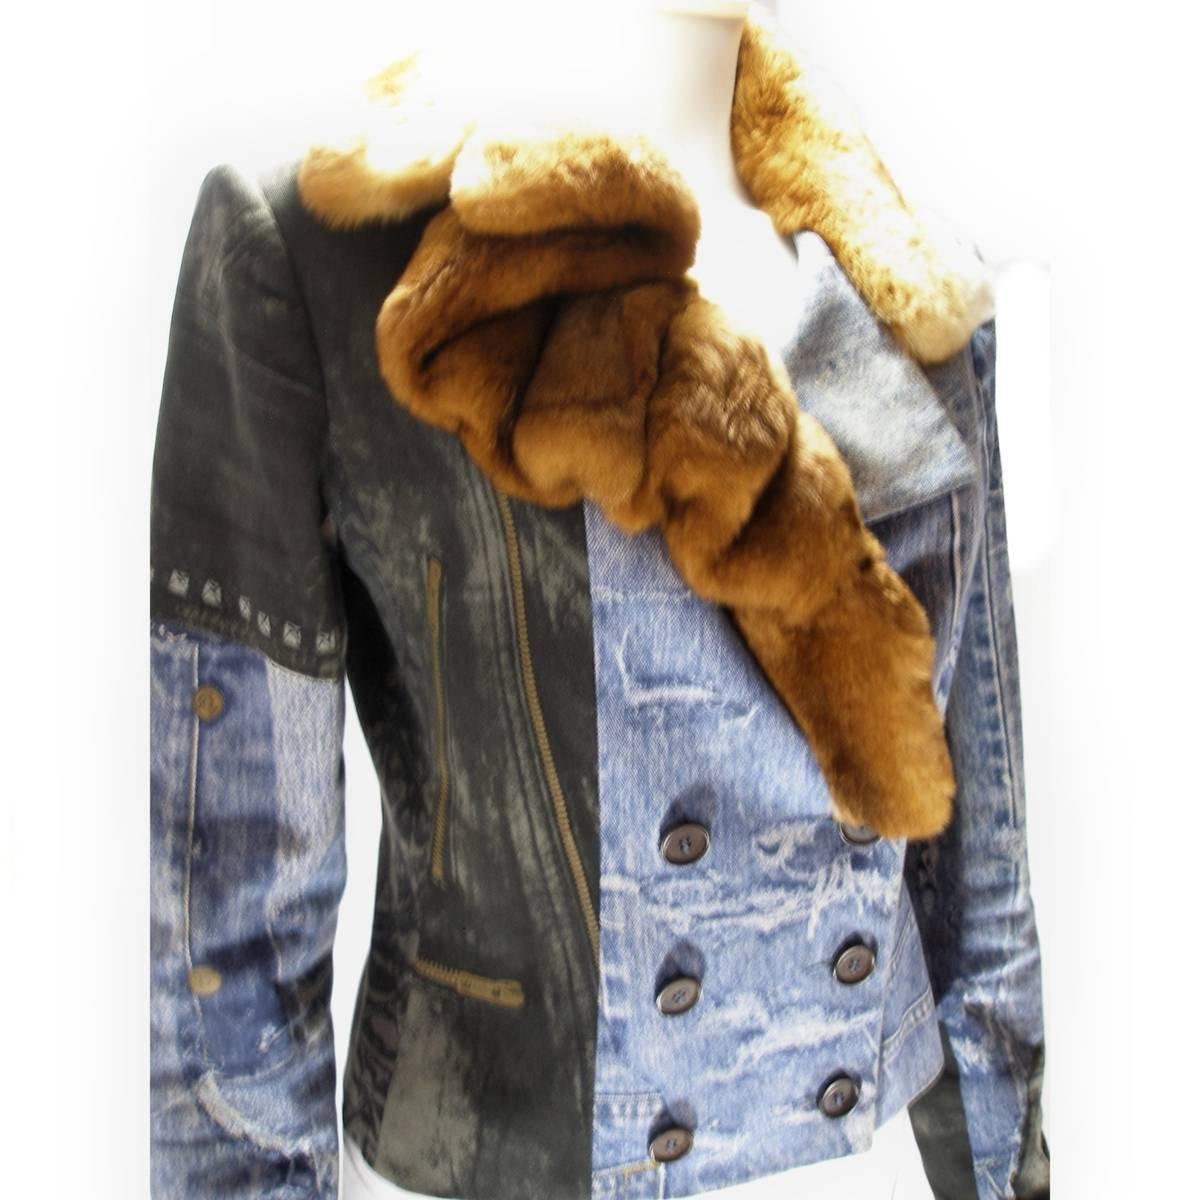 Absolument à collectionner ! 
Authentique veste en jean Christian Dior
Logo funky en forme de badge sur le denim.
Design en fourrure de cony superposé autour du col.
Je fais une taille standard de 10. Il s'adapte parfaitement. Il peut convenir à une